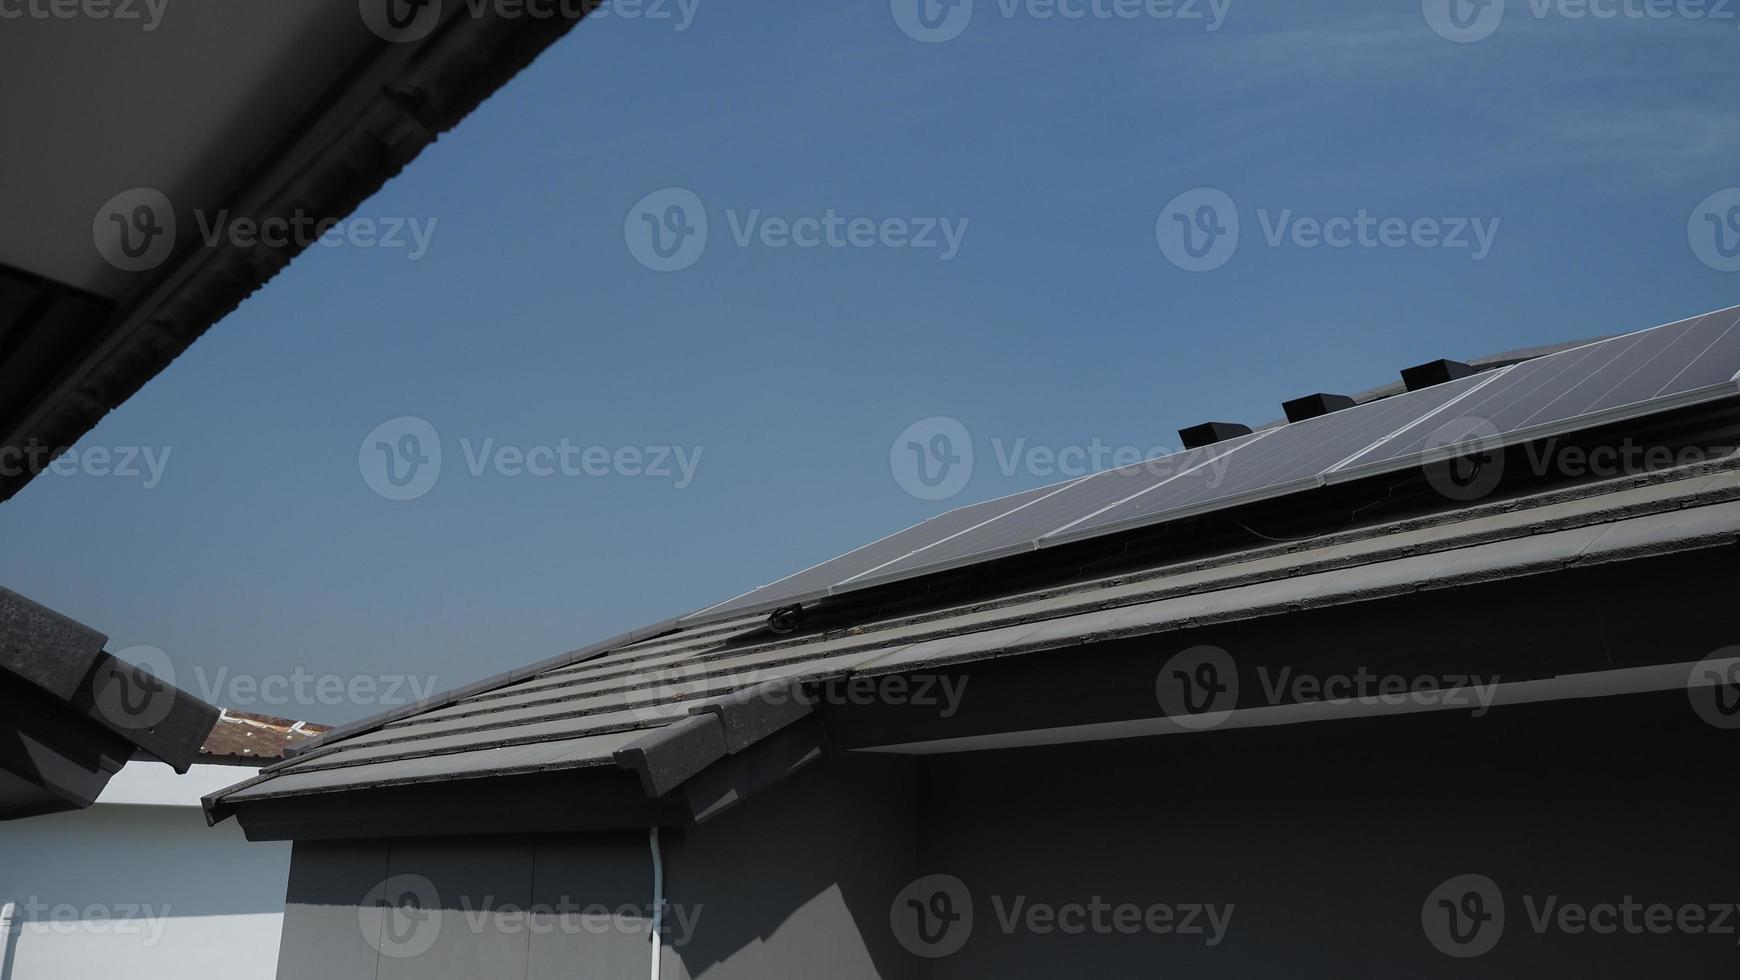 Photovoltaik. Solarzellen-Panel. Solardachkraftwerk auf dem Dach foto